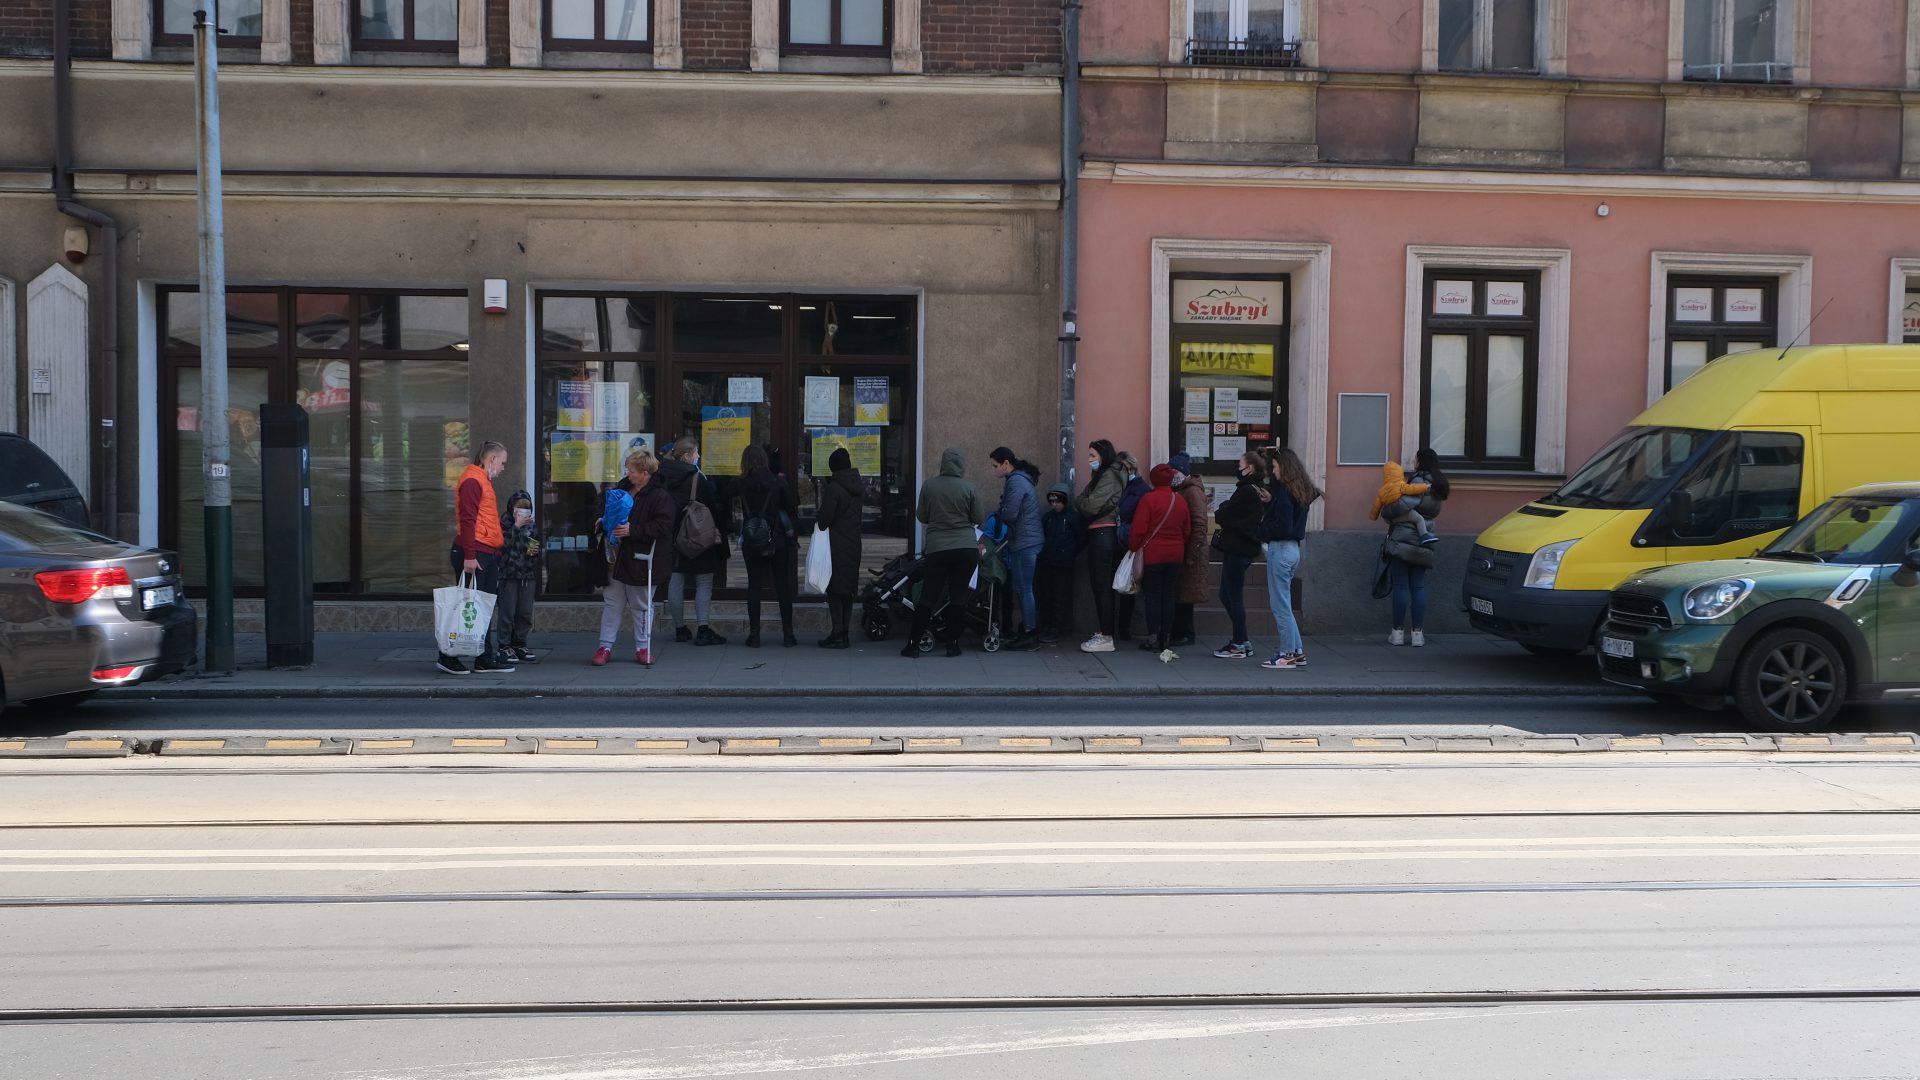 Sklep za zero złotych znajduje się przy ulicy Kalwaryjskiej w Krakowie. Codziennie ustawiają się przed nim długie kolejki.